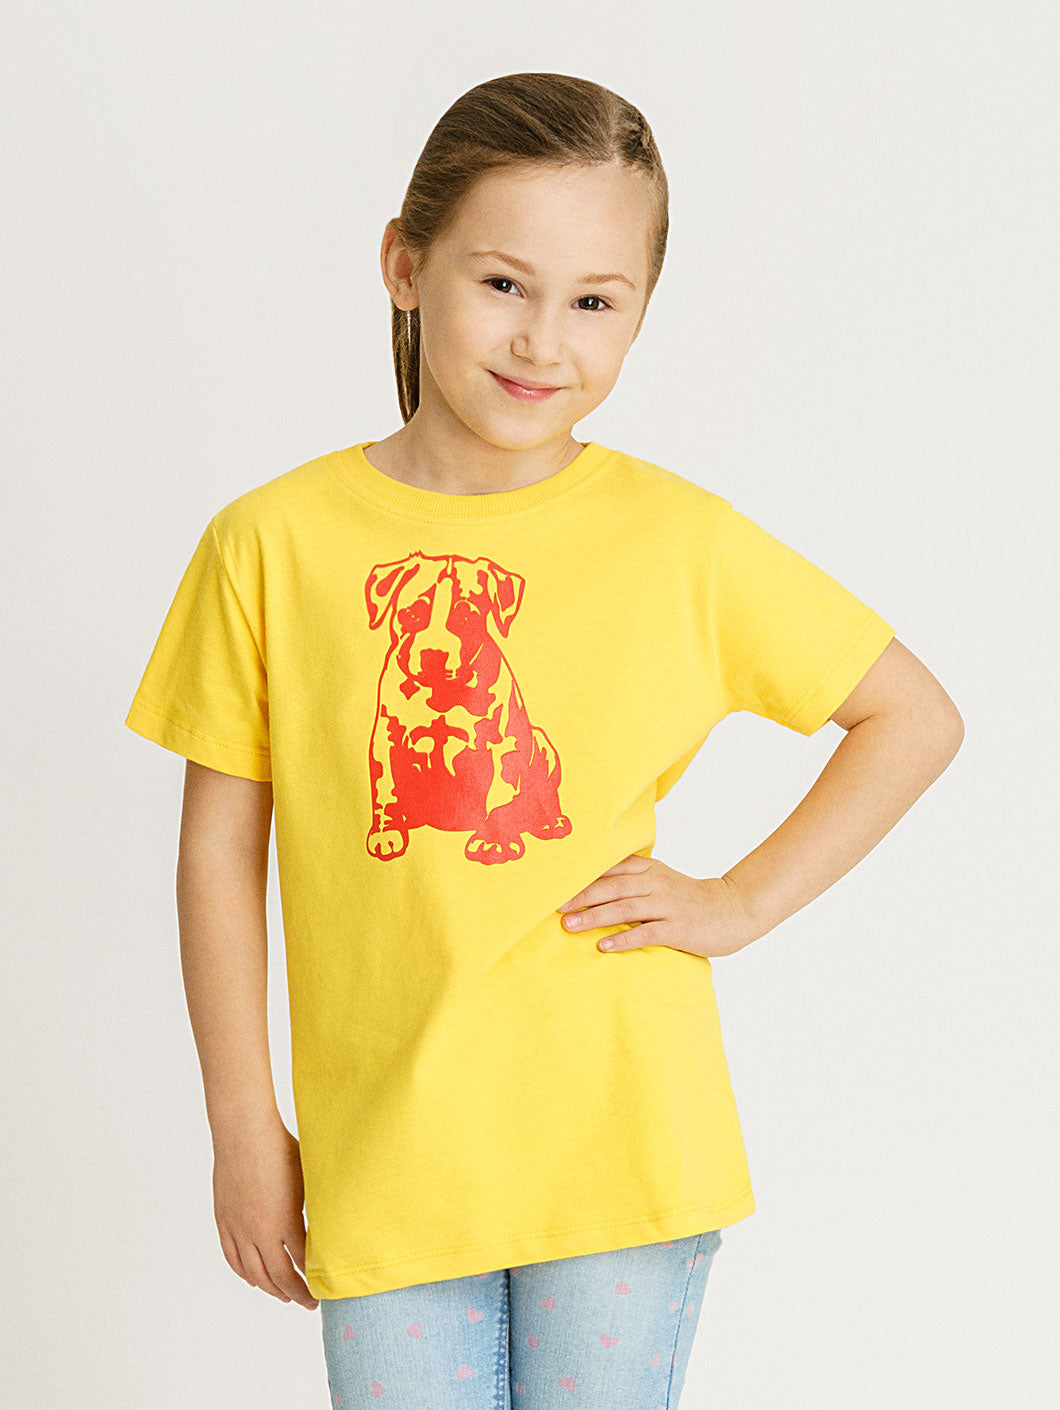 Babystaff Kids Logo T-Shirt gelb - 5